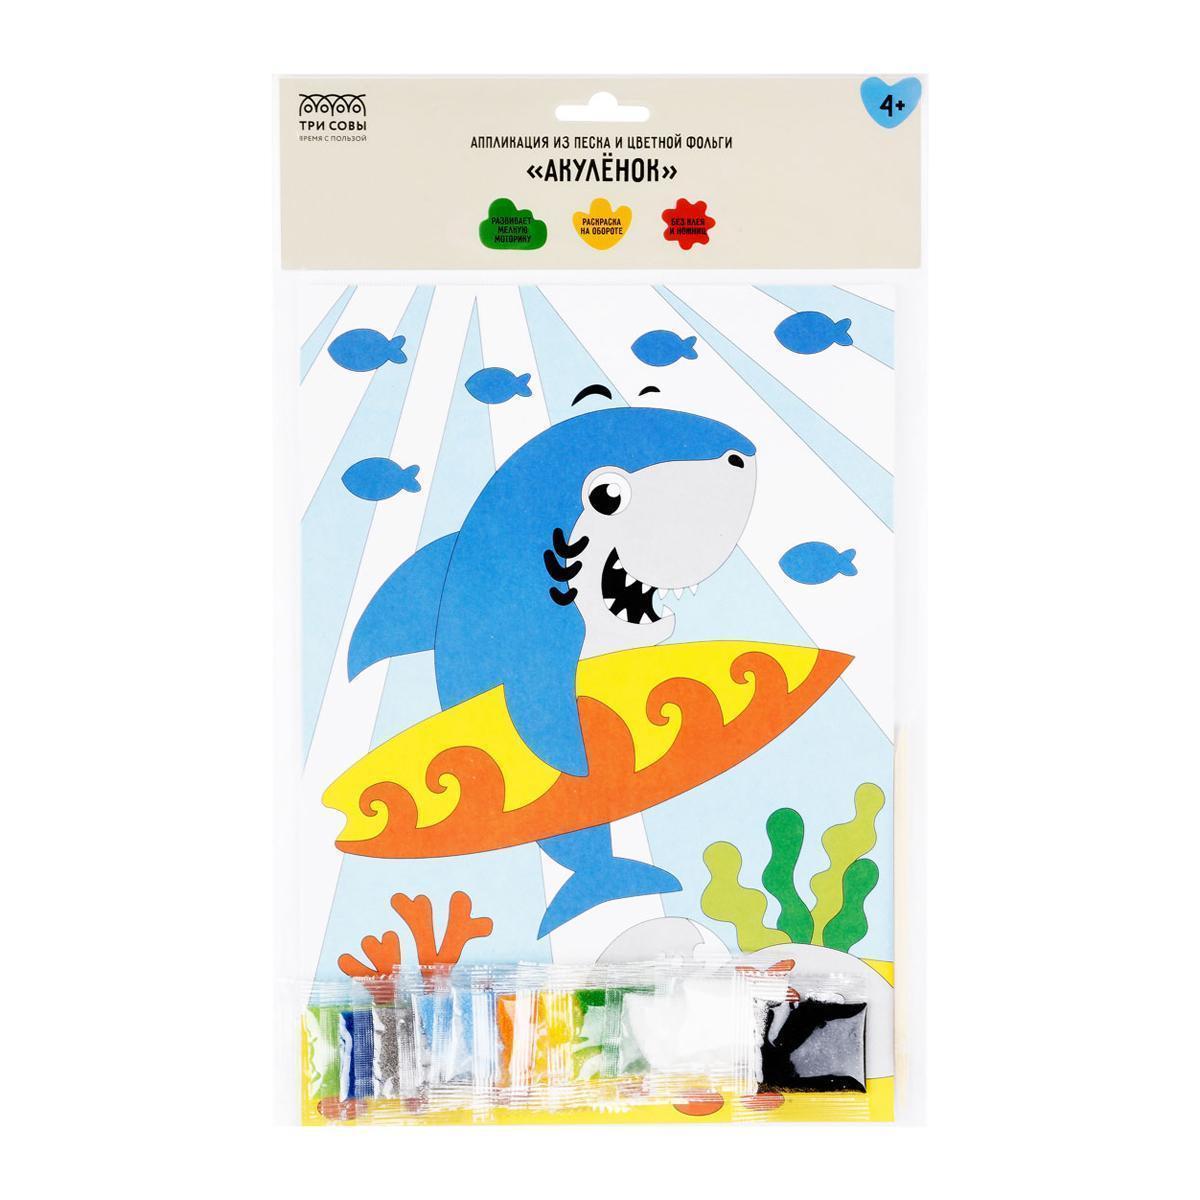 Аппликация из песка и цветной фольги ТРИ СОВЫ Ассорти, с раскраской, пакет с европодвесом